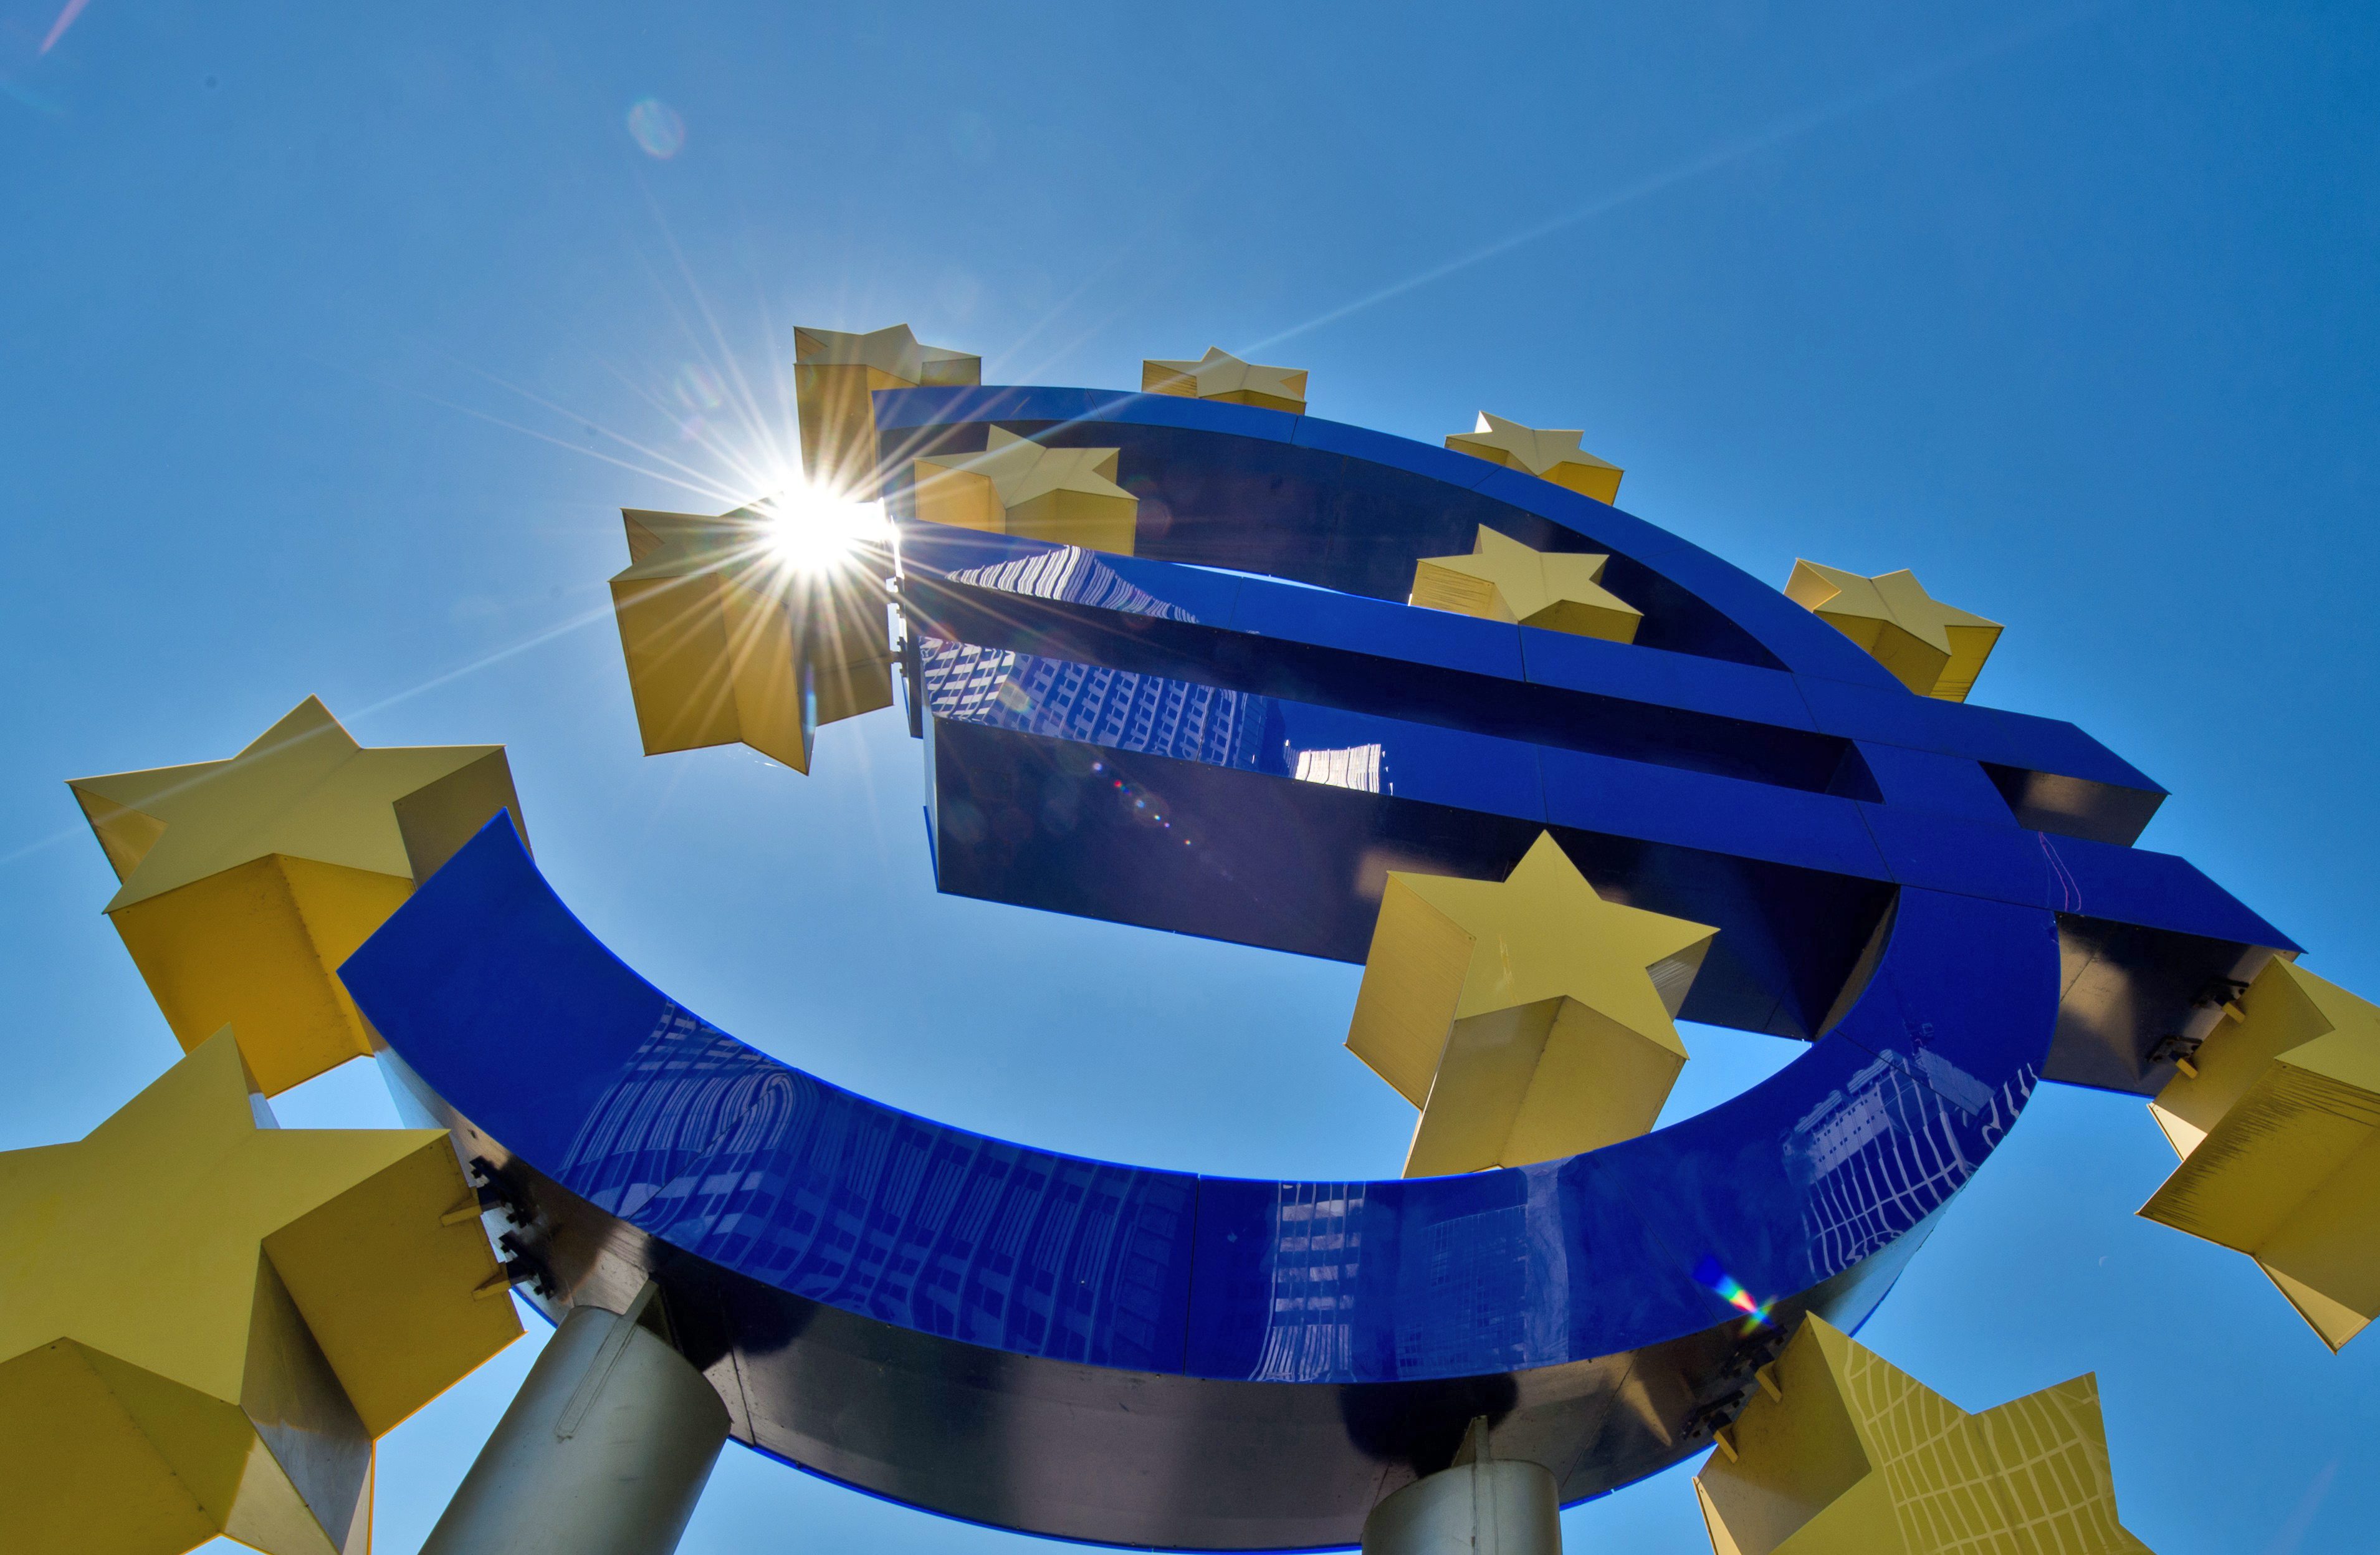 Het economisch herstel in de eurozone blijft omgeven met grote risico's, onder meer door het uitblijven van structurele hervormingen in de landen van het eurogebied. Dat schrijft de Europese Centrale Bank (ECB) in zijn donderdag gepubliceerde maandrapport. Volgens de ECB blijven daarnaast de geopolitieke spanningen in de wereld het vertrouwen onder druk zetten, waardoor de private investeringsbereidheid wordt geremd. In het rapport wordt verder gemeld dat het beleidsbepalende comité van de ECB indien nodig unaniem bereid is meer onconventionele maatregelen te nemen om de risico's van een aanhoudend lage inflatie aan te pakken. De ECB kondigde eerder deze maand aan schuldpapieren bij banken op te gaan kopen om zo de economie te stimuleren en de lage inflatie tegen te gaan.